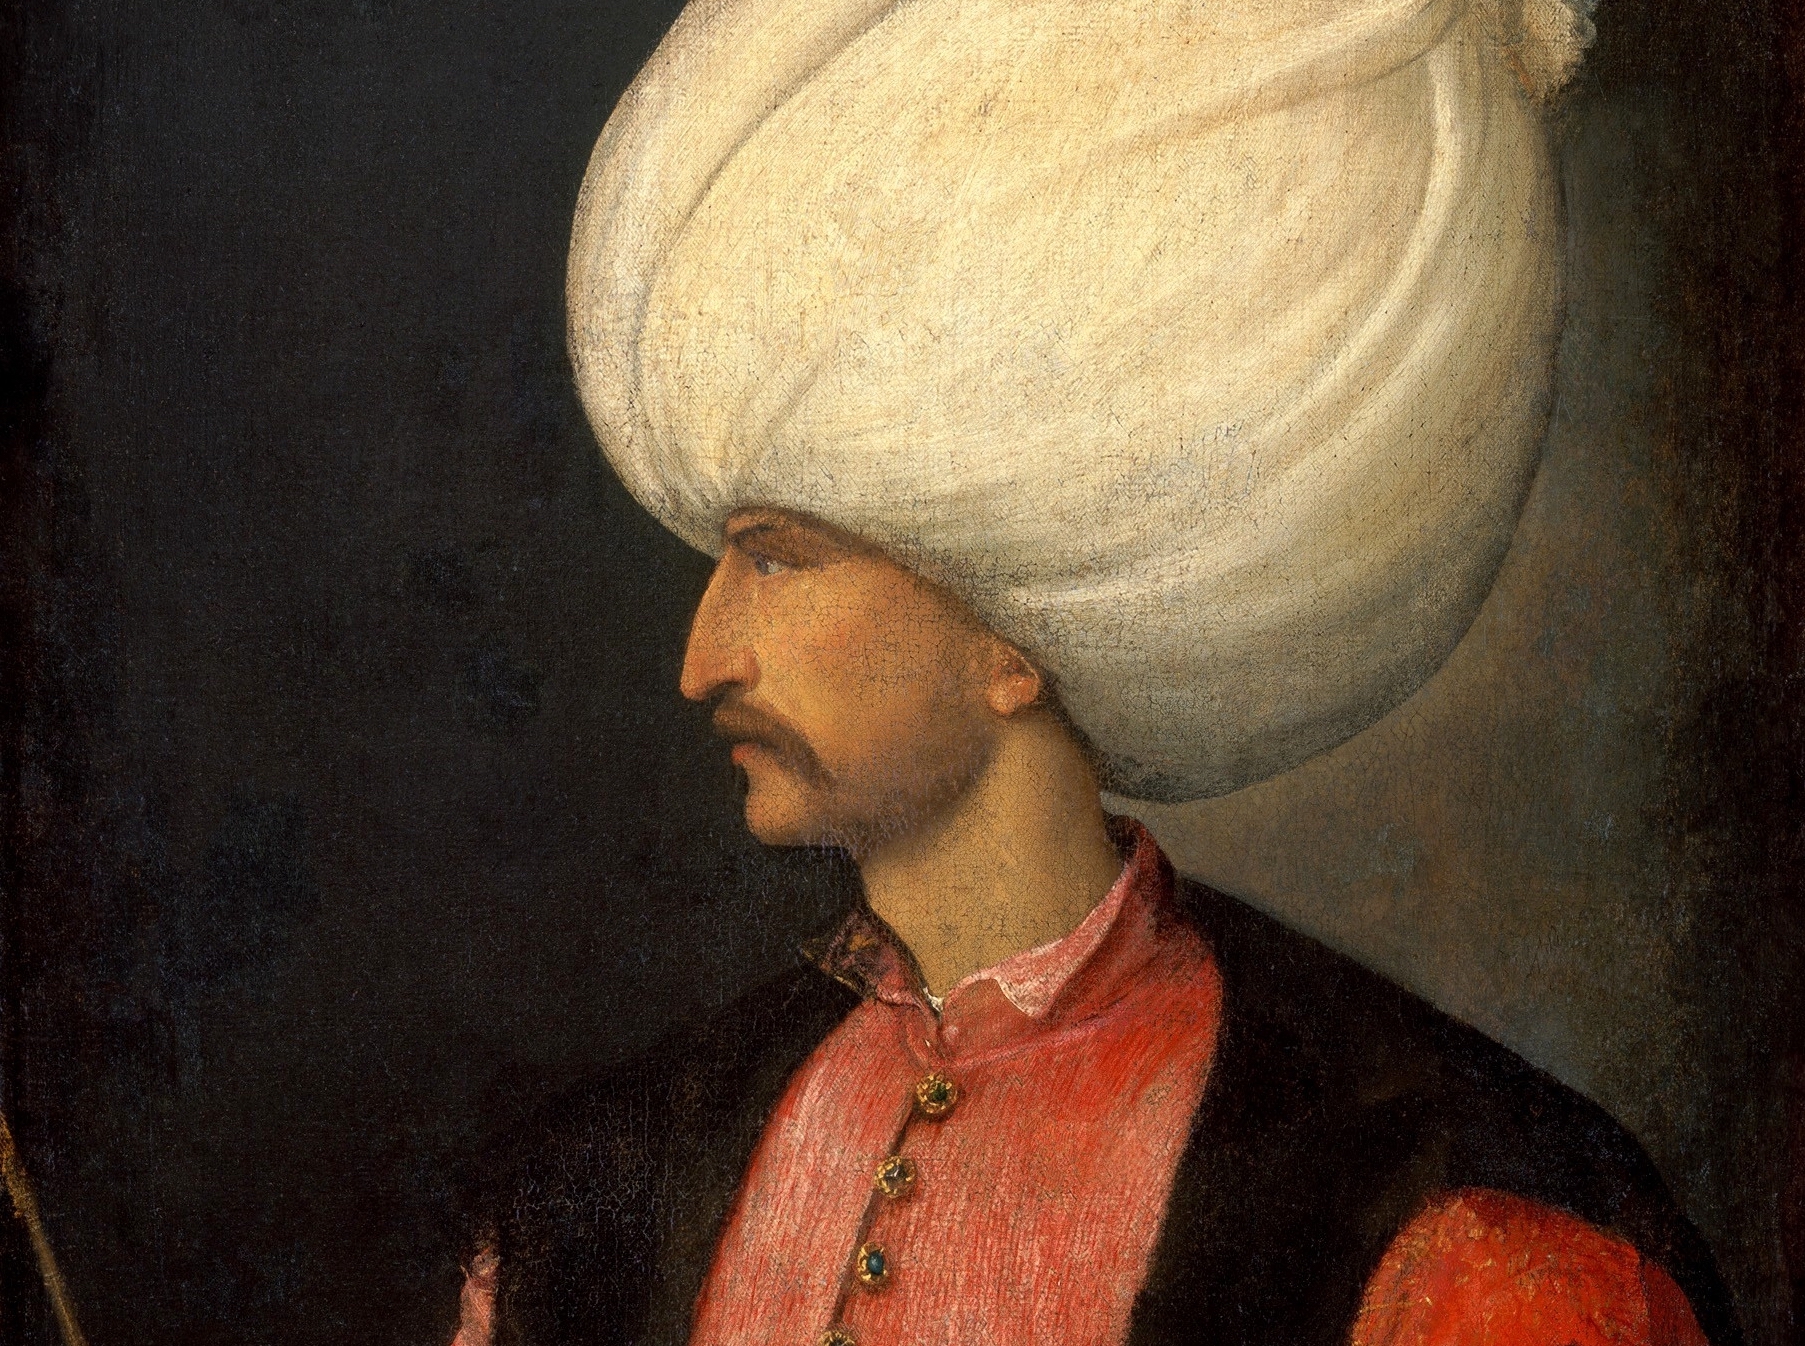 Circa Suleiman